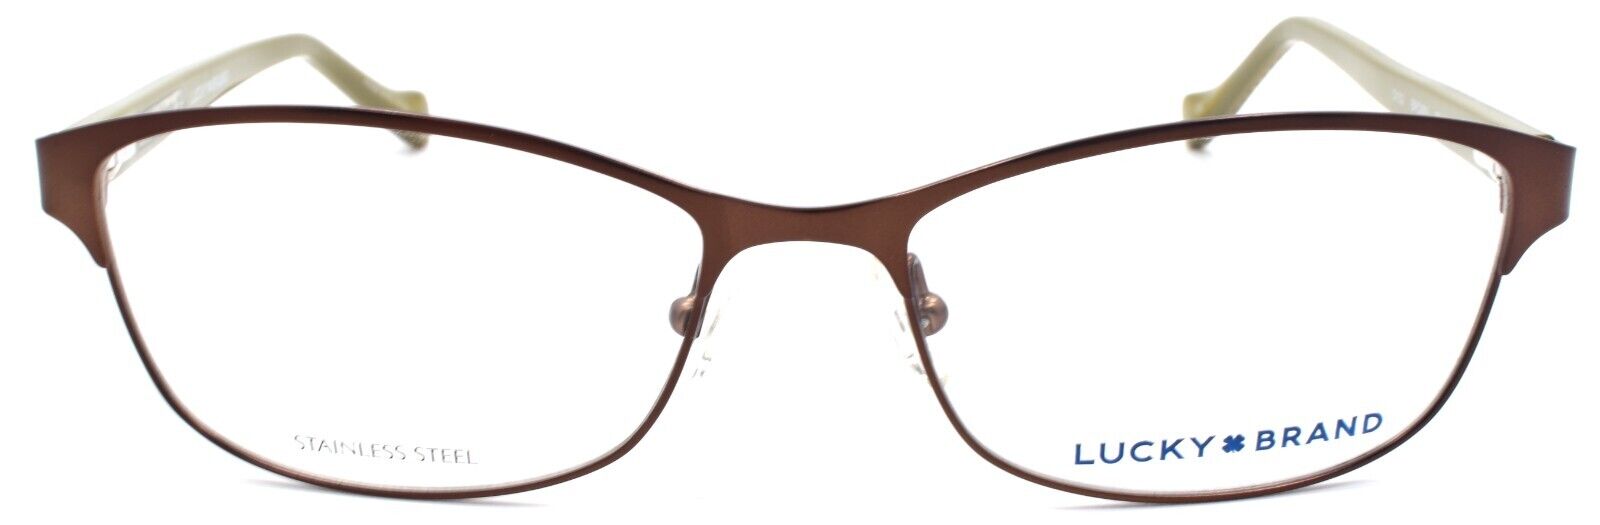 2-LUCKY BRAND D102 Women's Eyeglasses Frames 53-16-135 Brown-751286281668-IKSpecs